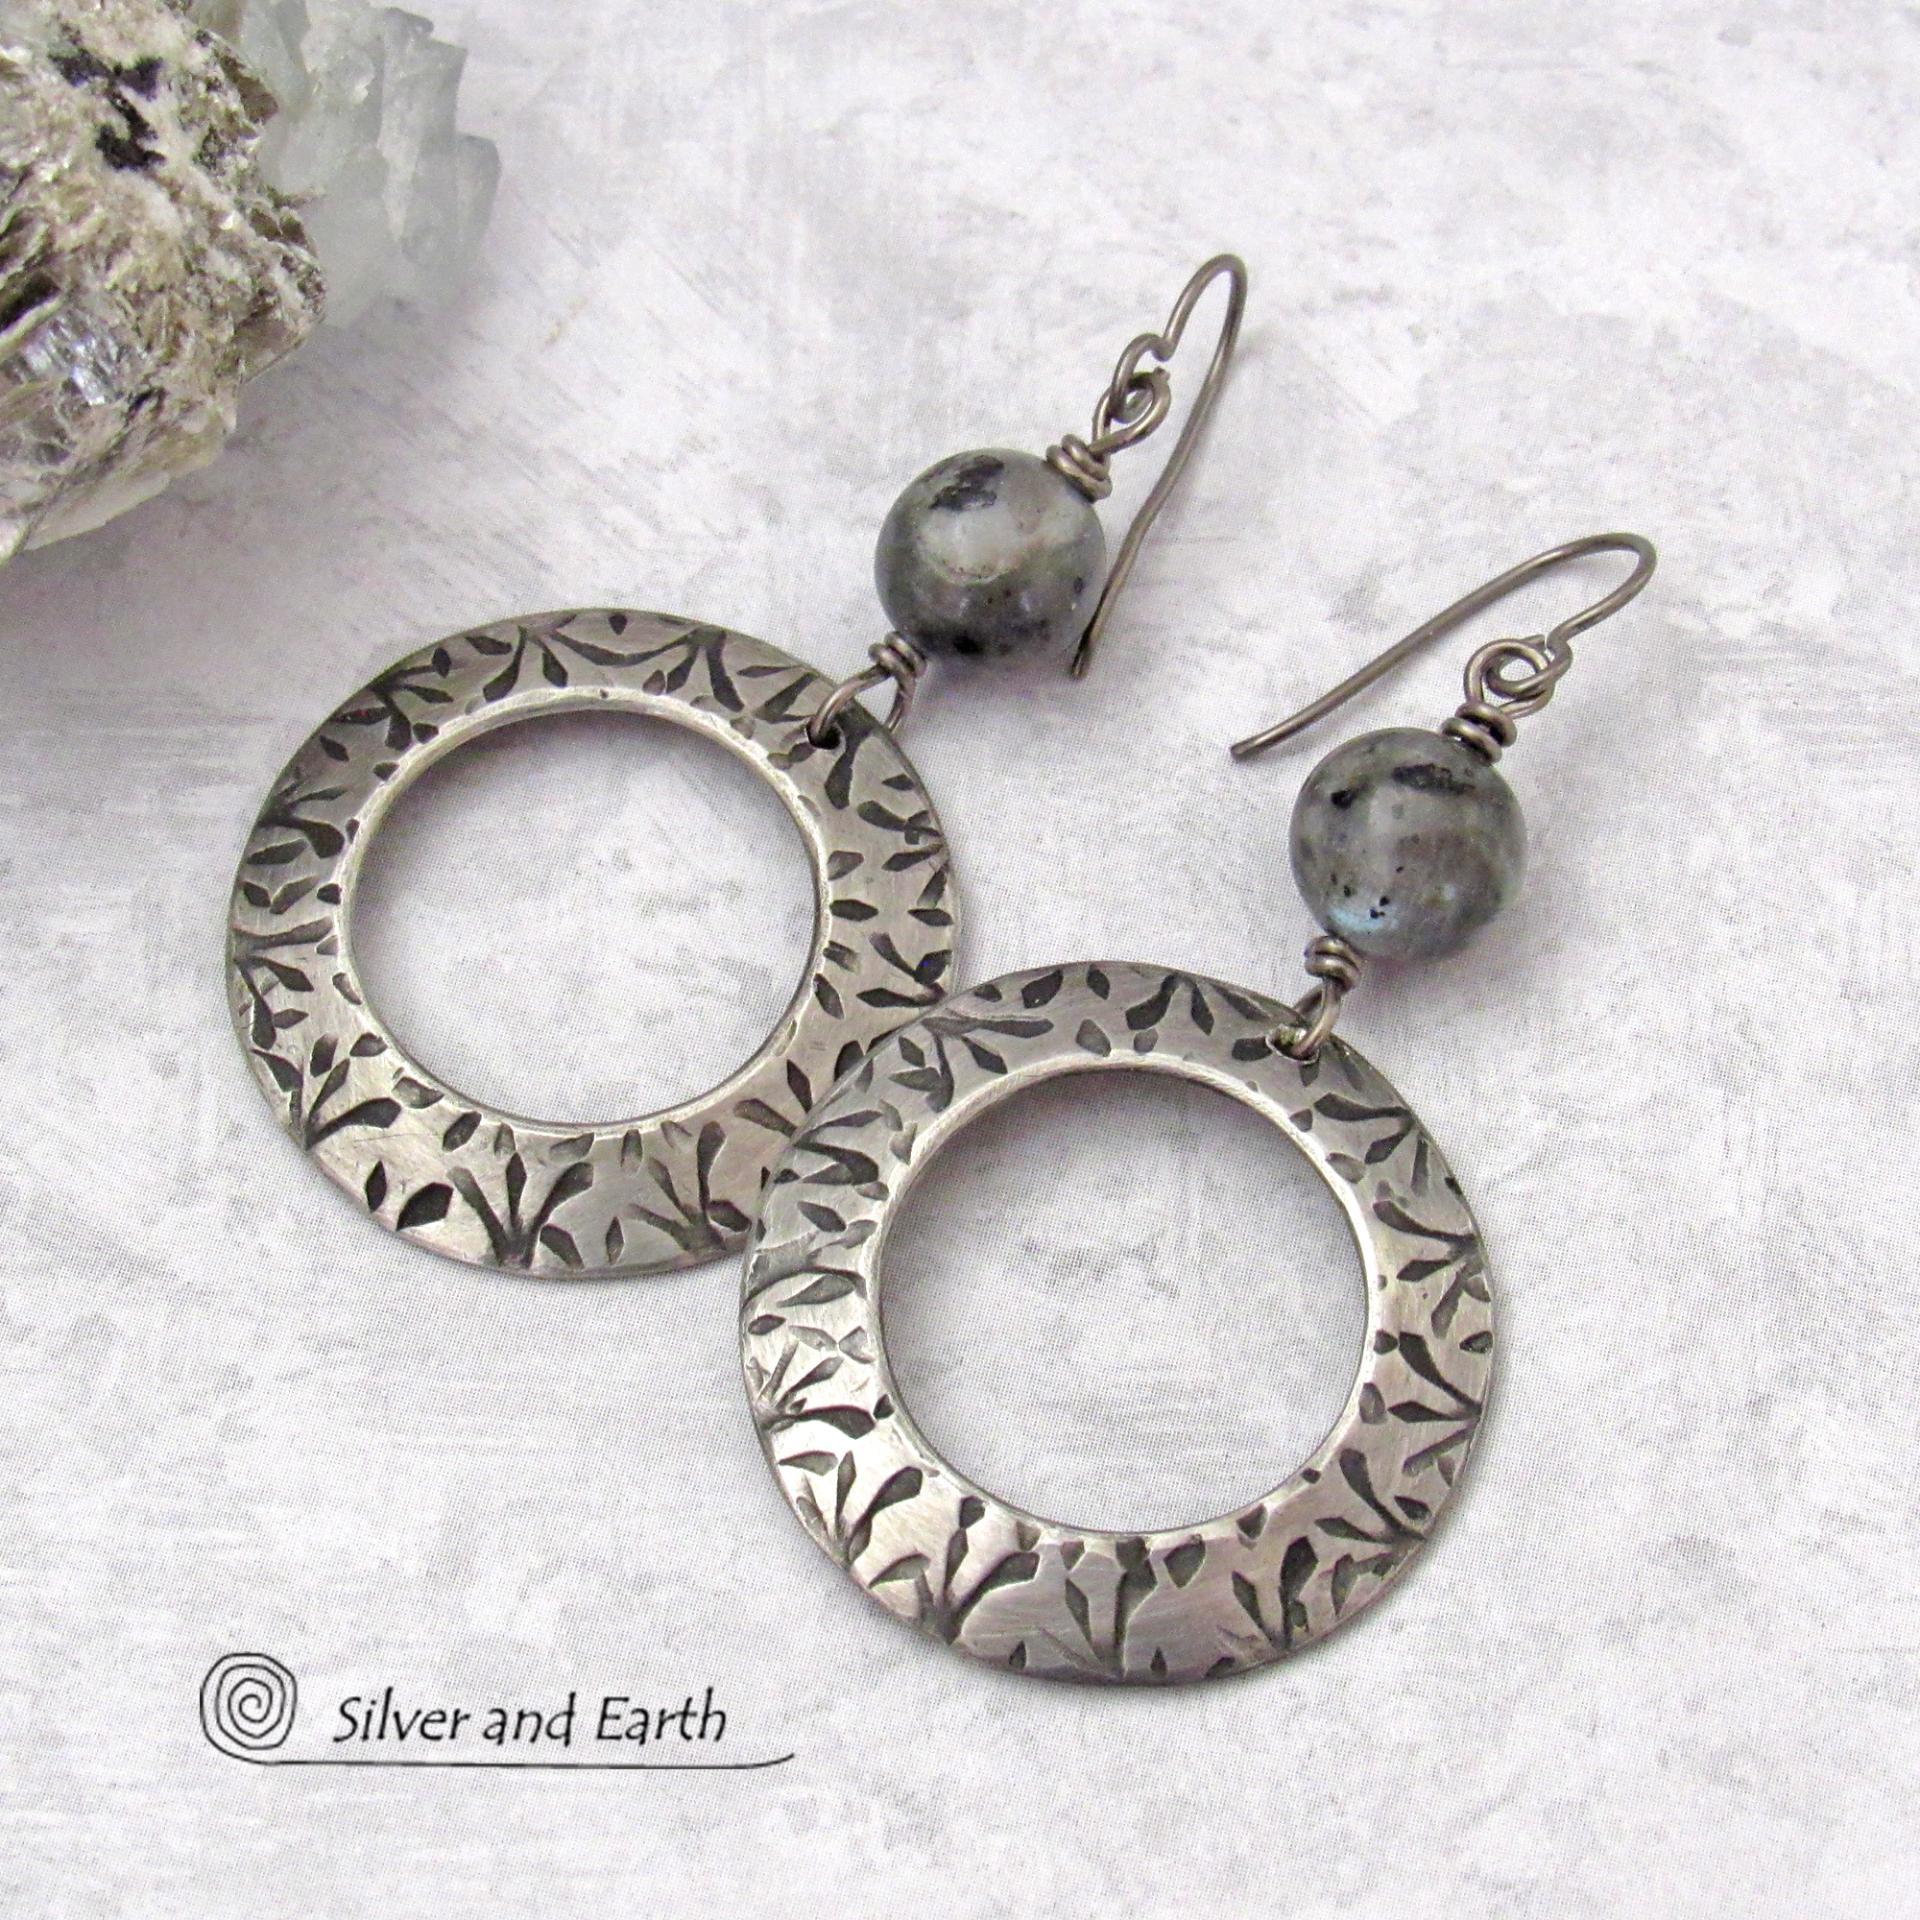 Big Round Silver Pewter Hoop Earrings with Larvikite Gemstones - Black Labradorite Norwegian Moonstone Jewelry